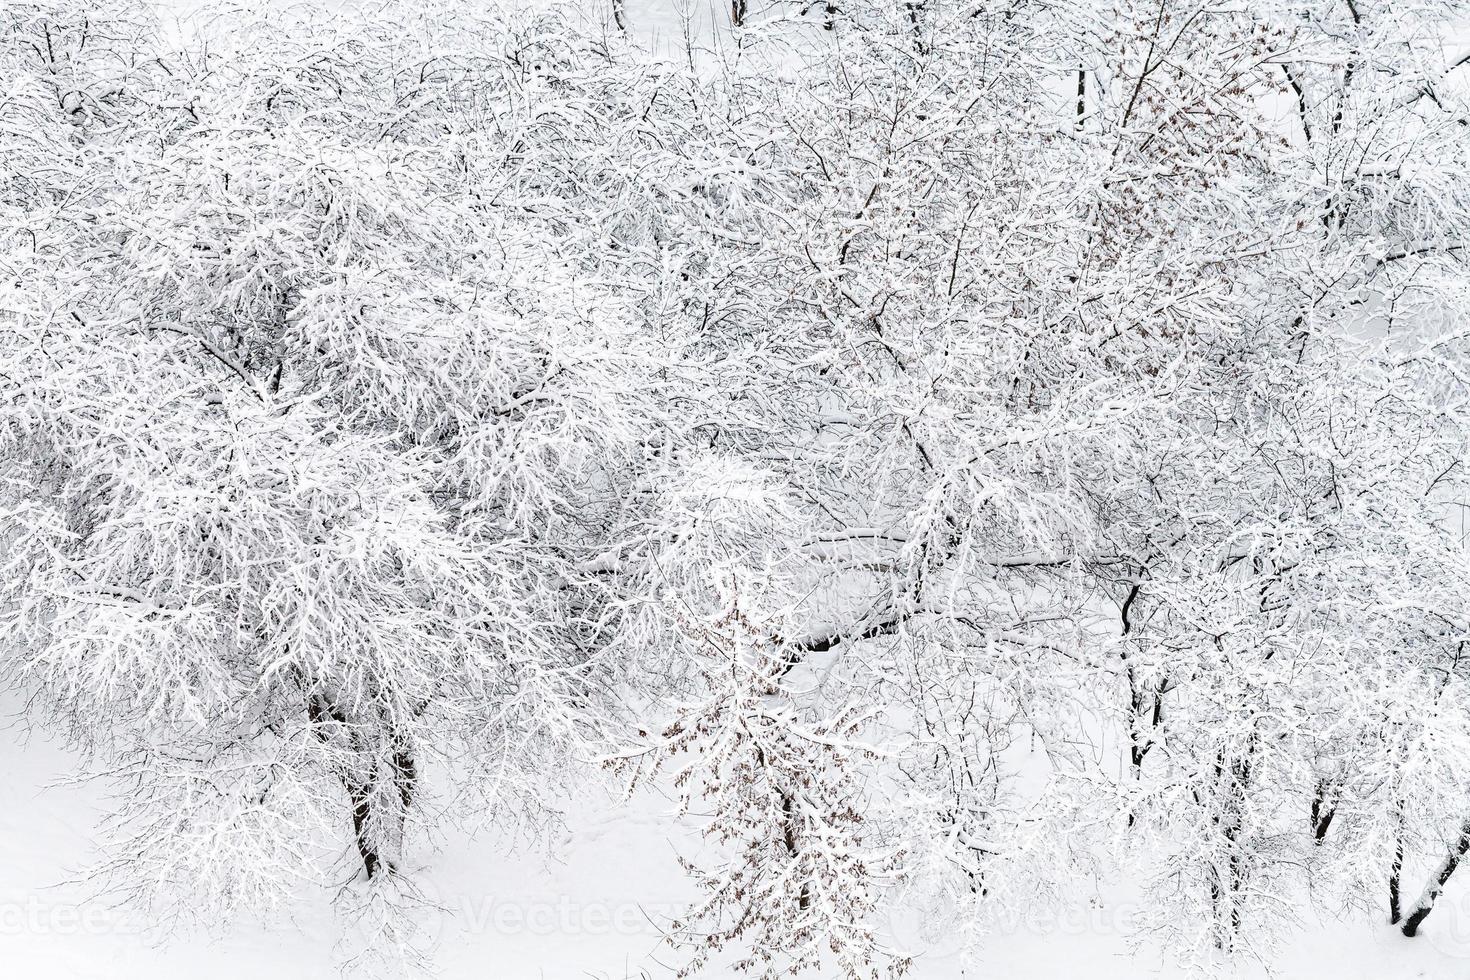 vista anterior de manzanos cubiertos de nieve en el jardín foto